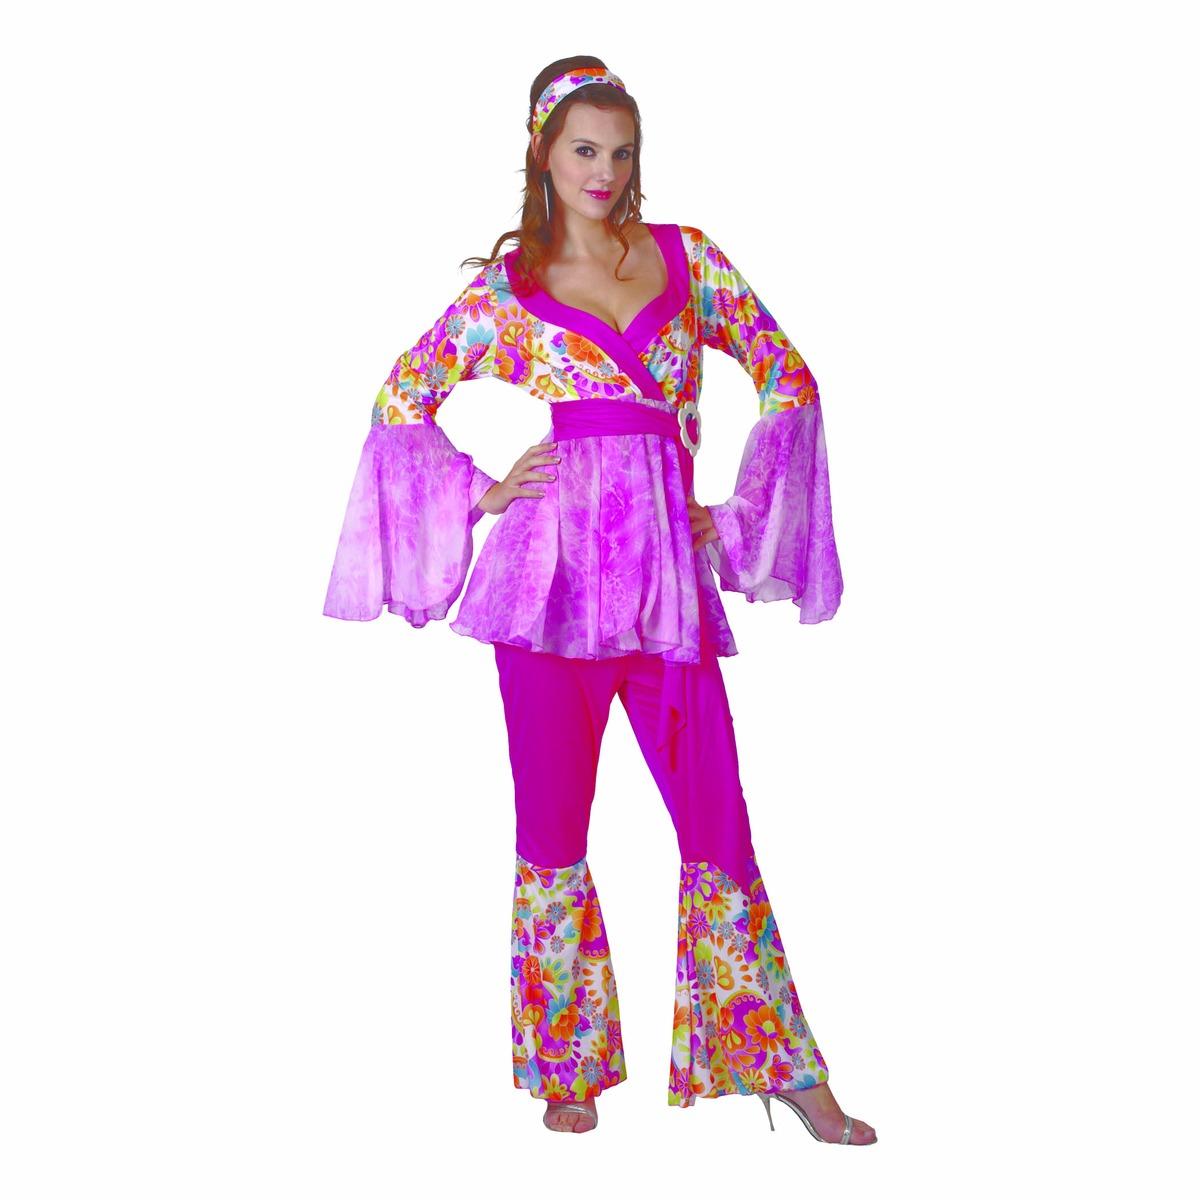 Déguisement adulte femme modèle hippie - Taille unique - Multicolore